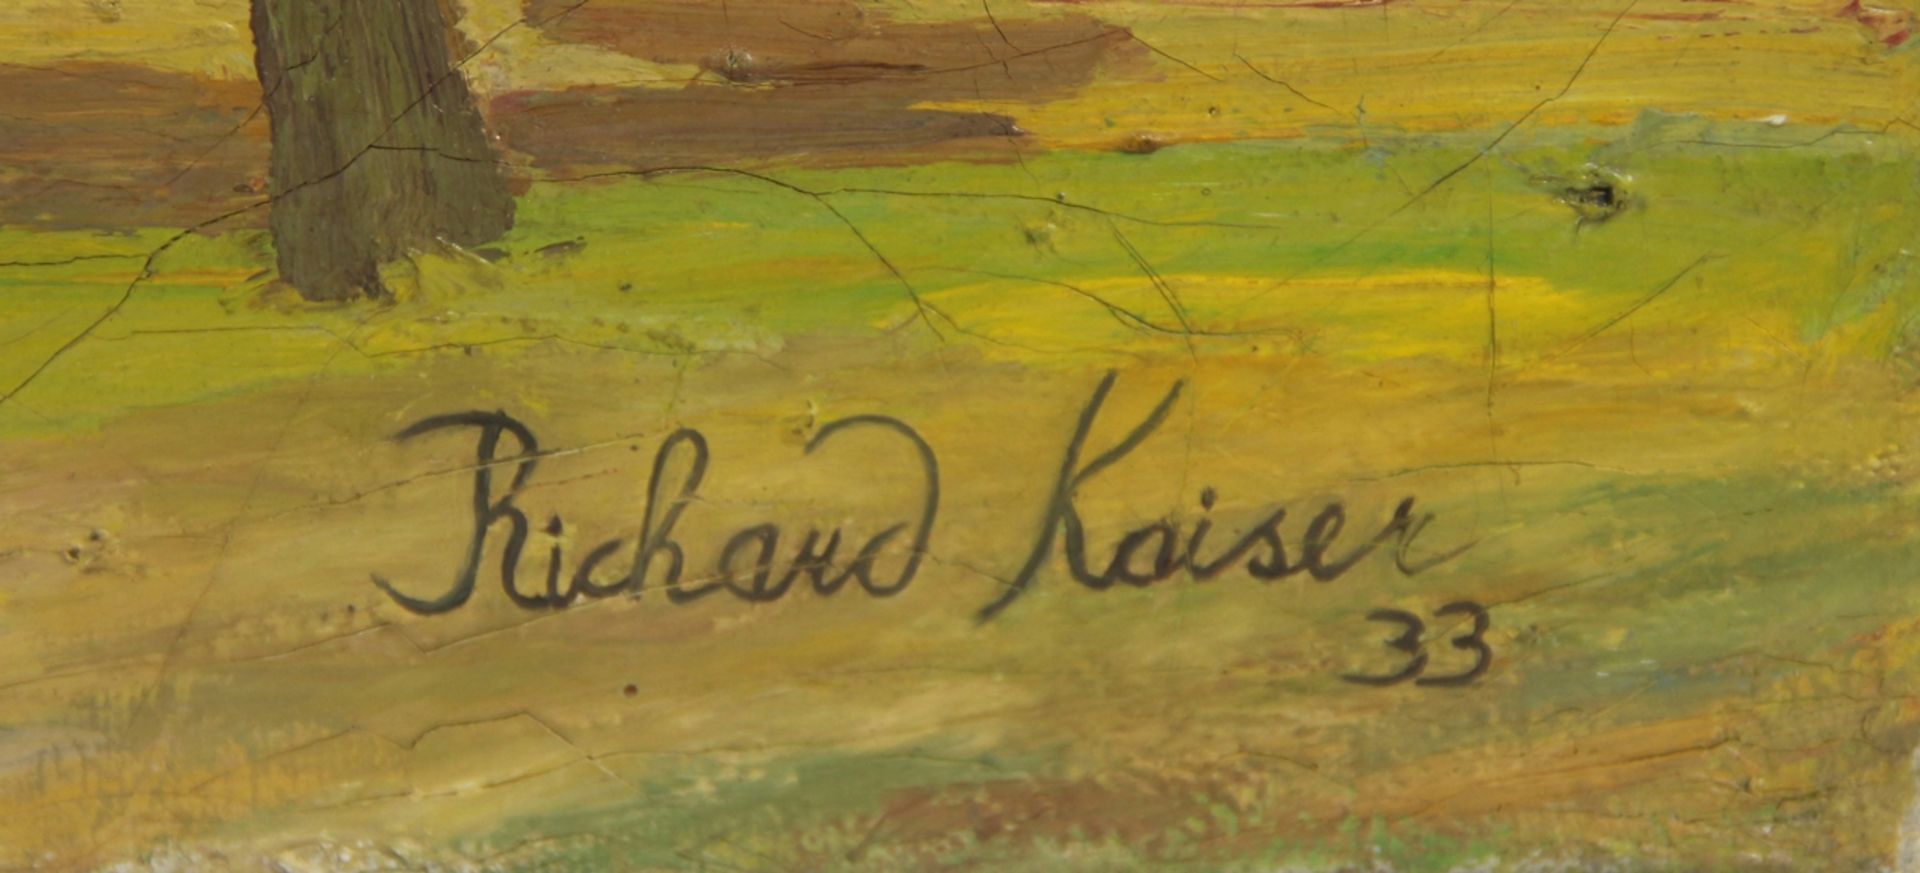 Kaiser, Richard - Image 2 of 3